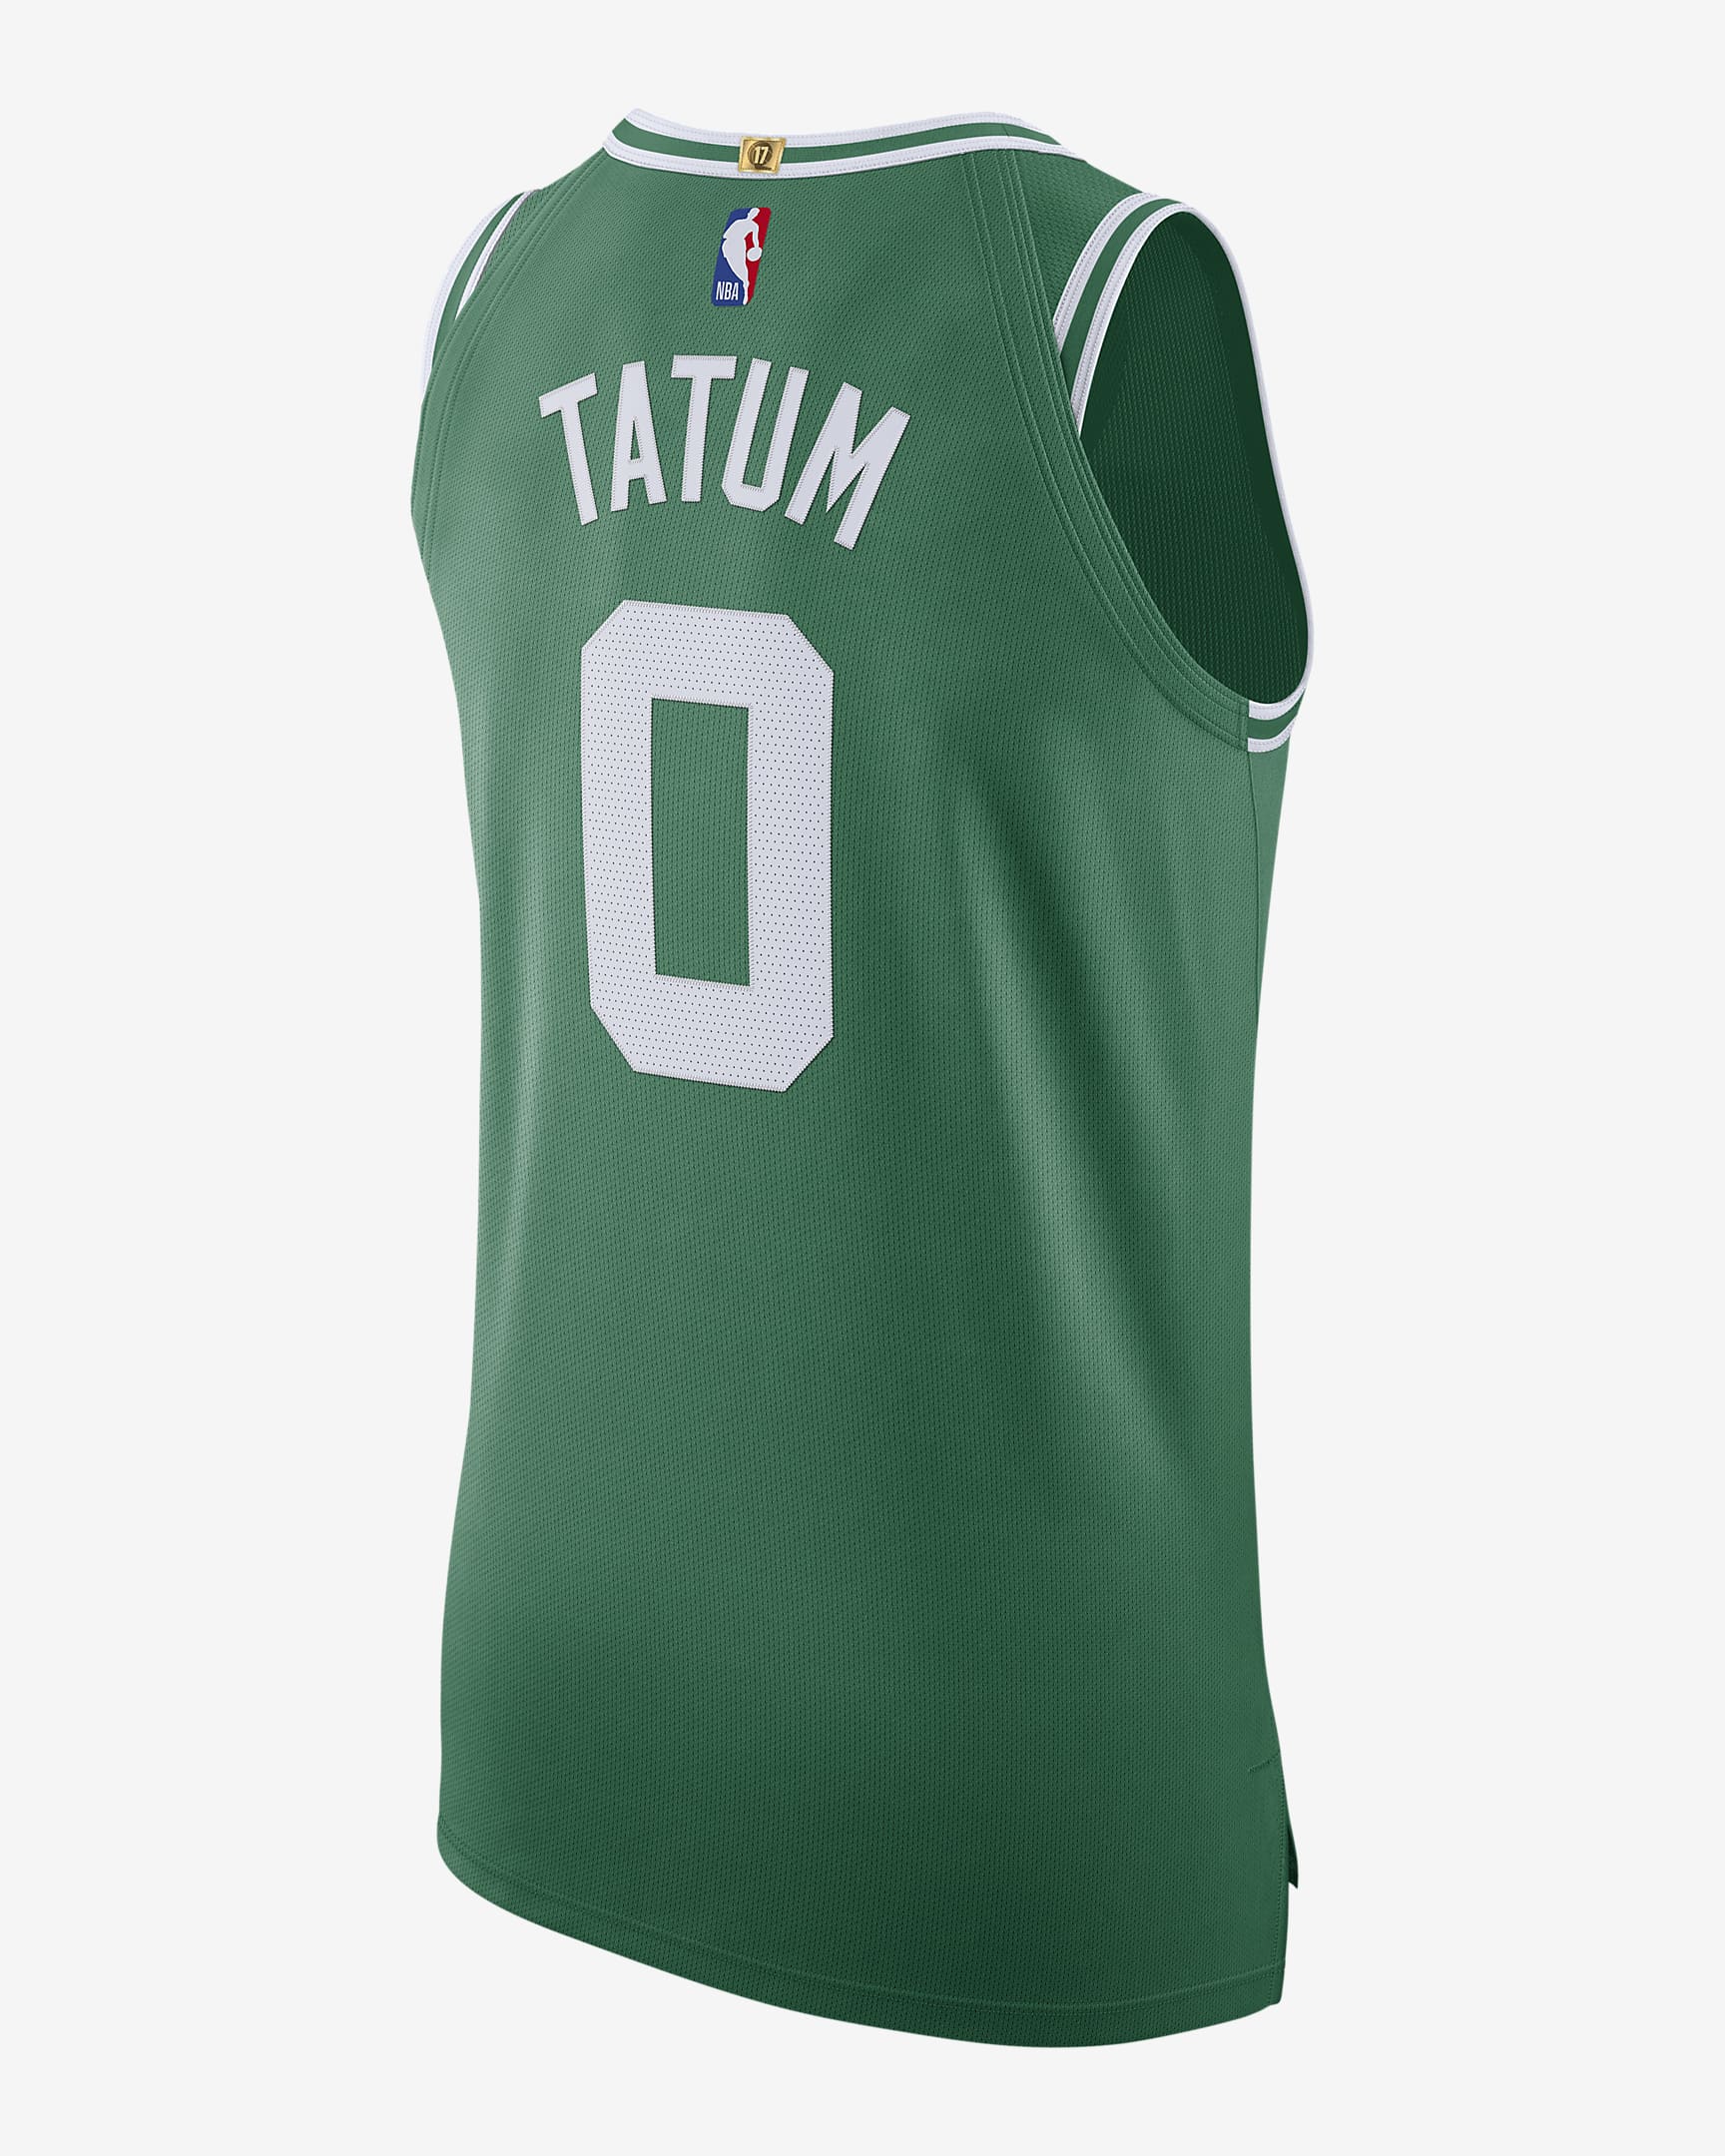 Jersey Nike de la NBA Authentic para hombre Jayson Tatum Celtics Icon ...